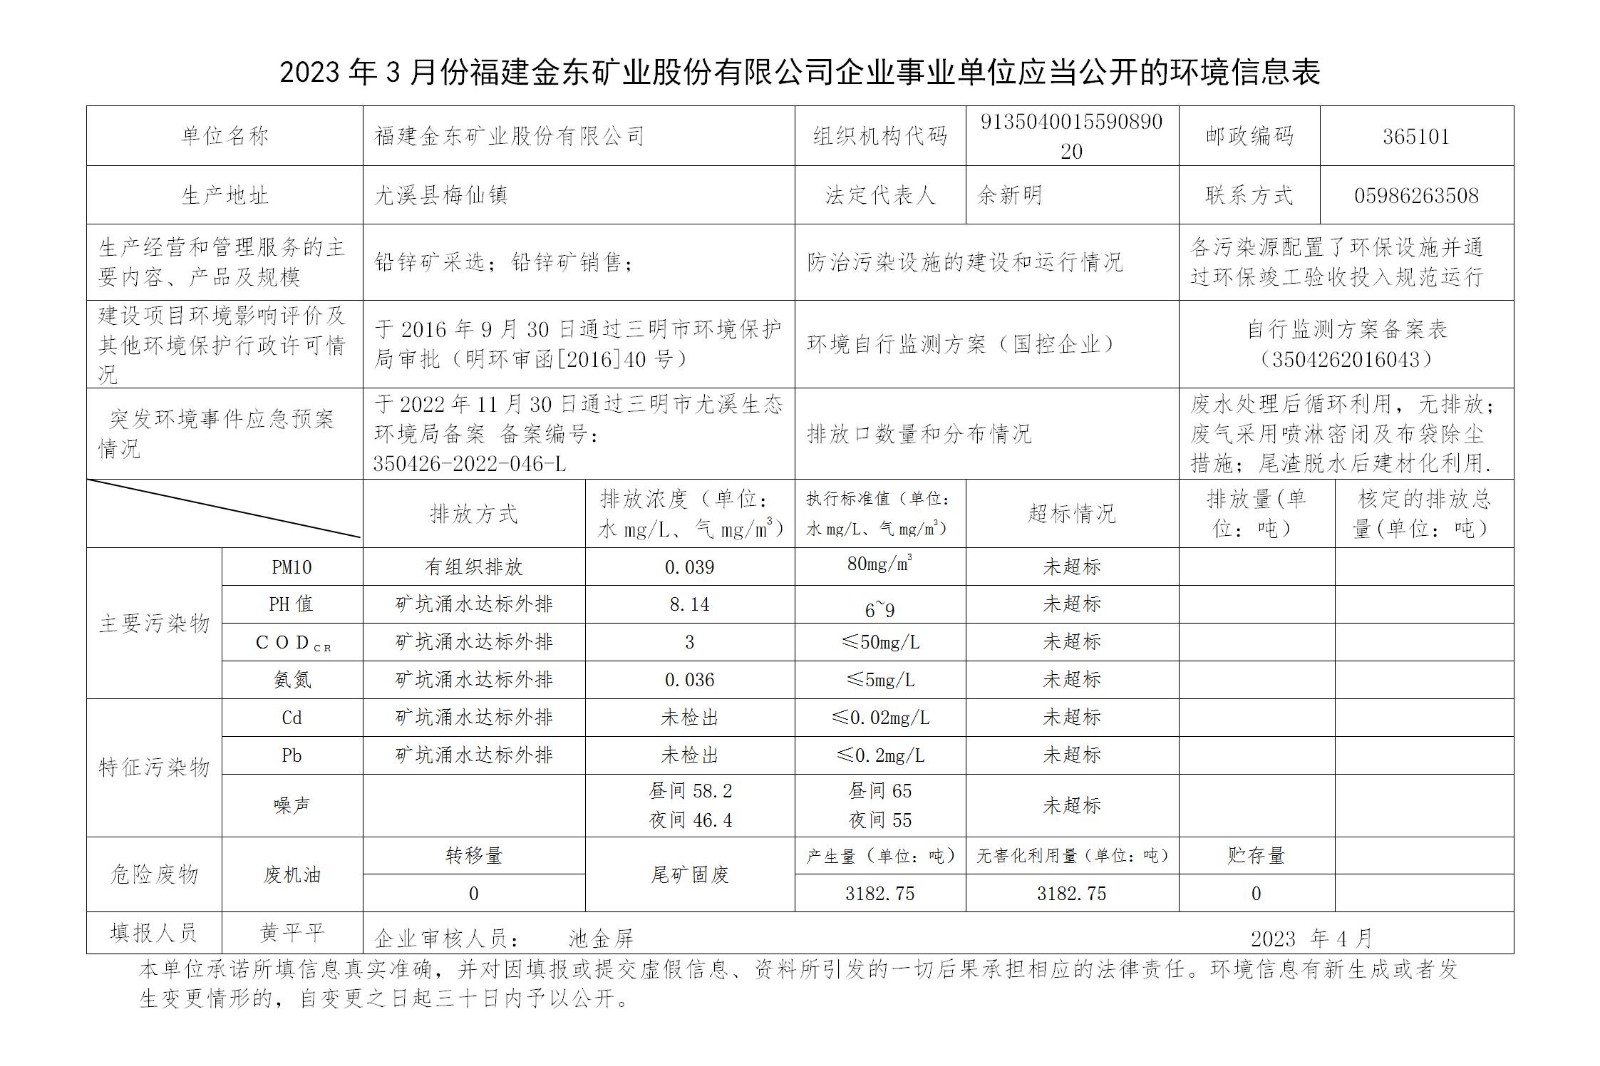 2023年3月份pg电子官方网站企业事业单位应当公开的环境信息表_01.jpg